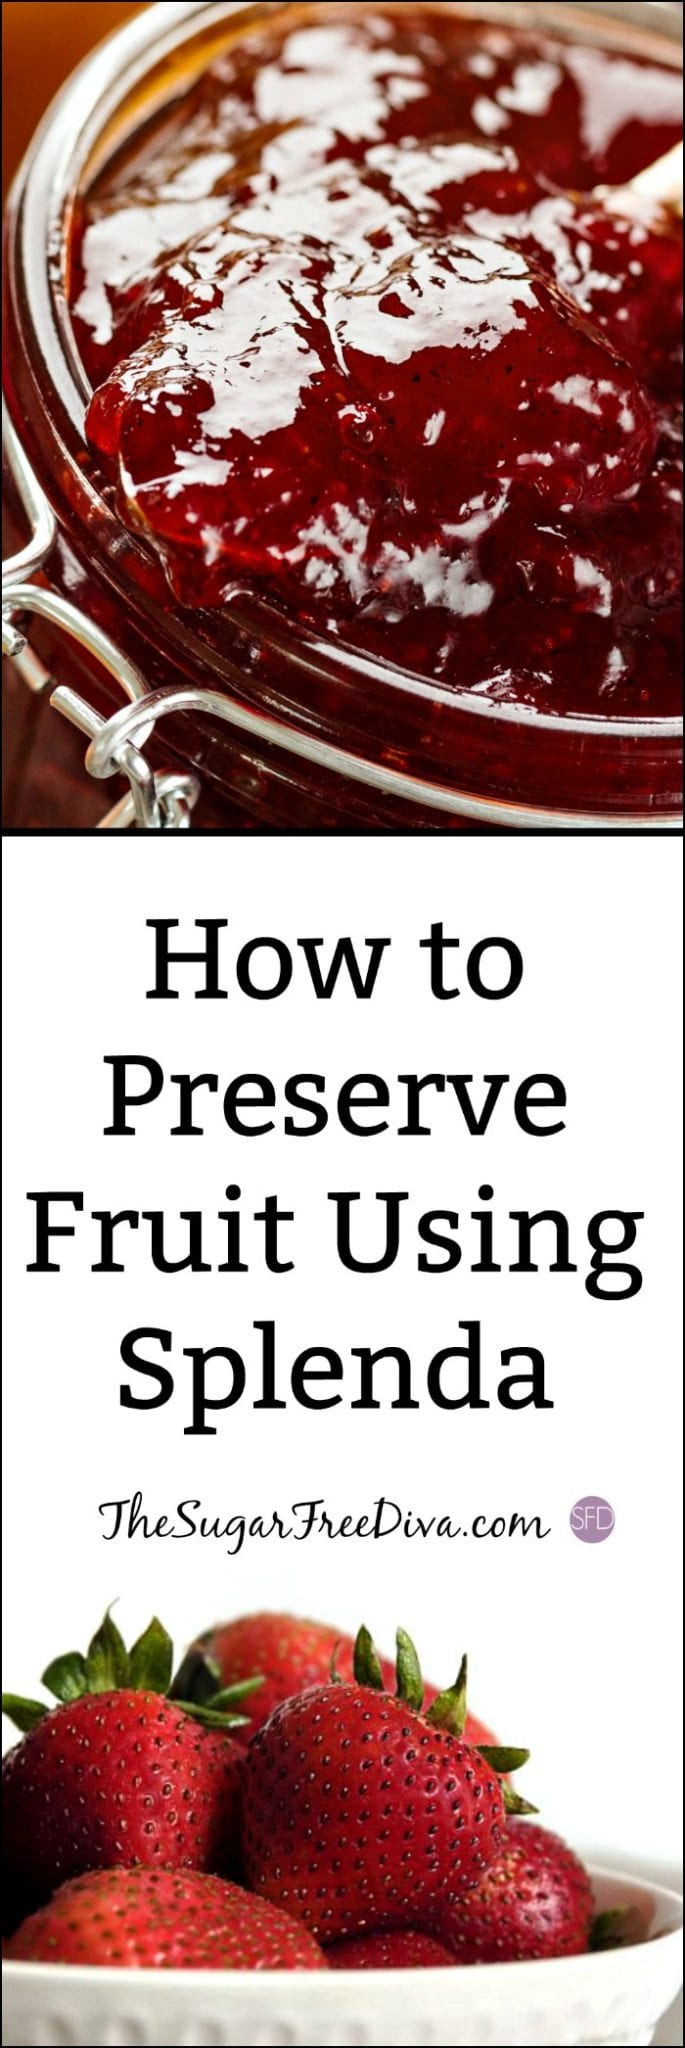 How to Preserve Fruit Using Splenda